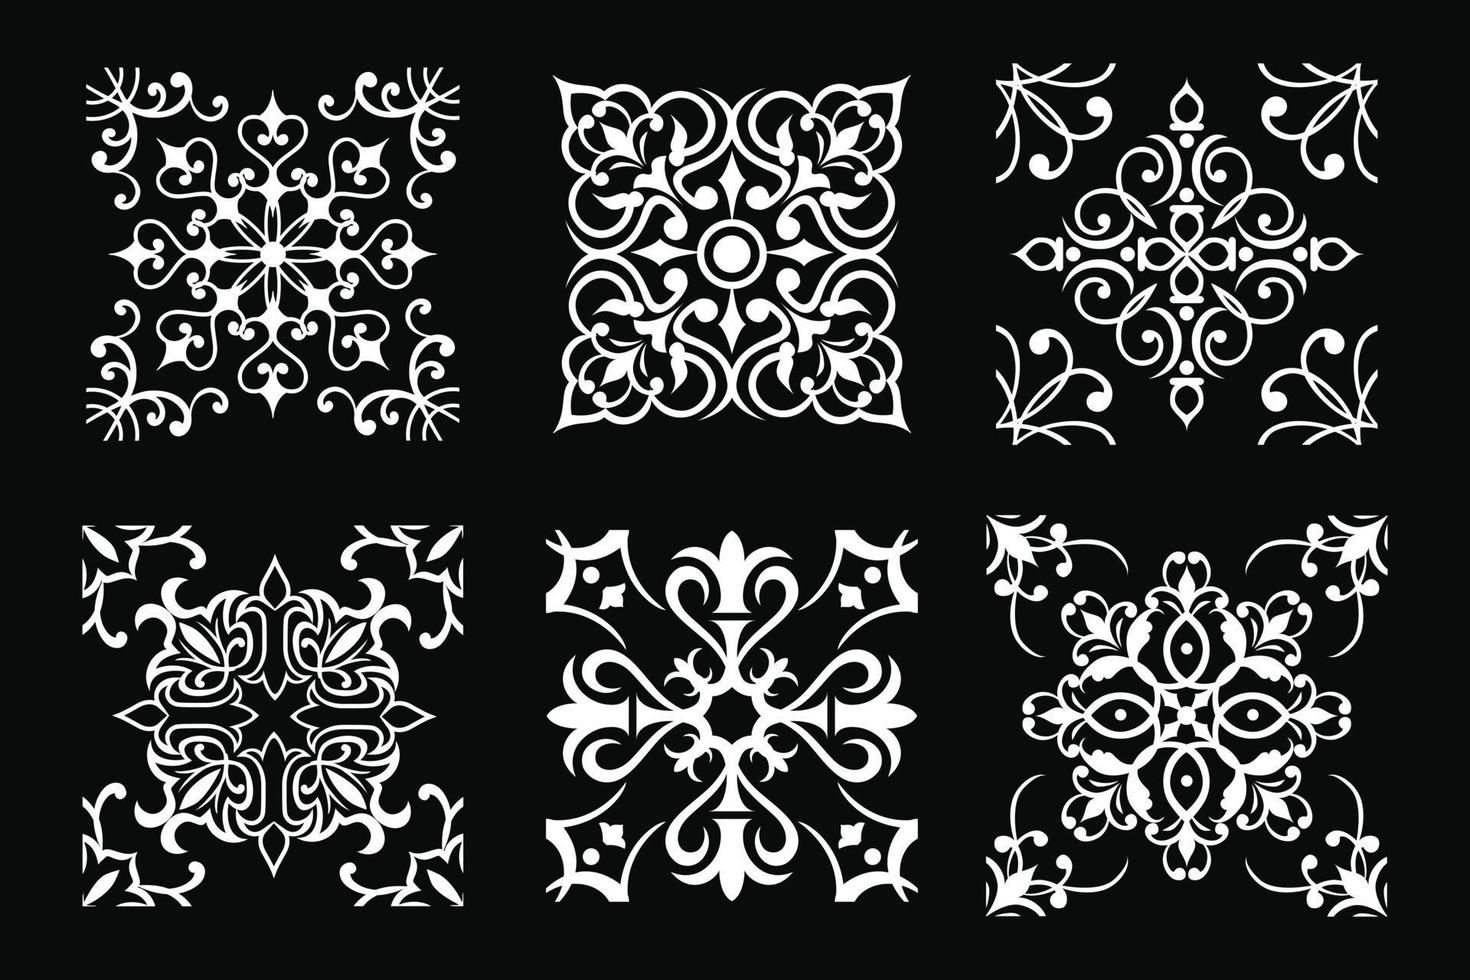 conjunto de blocos de vetores em desenhos em preto e branco